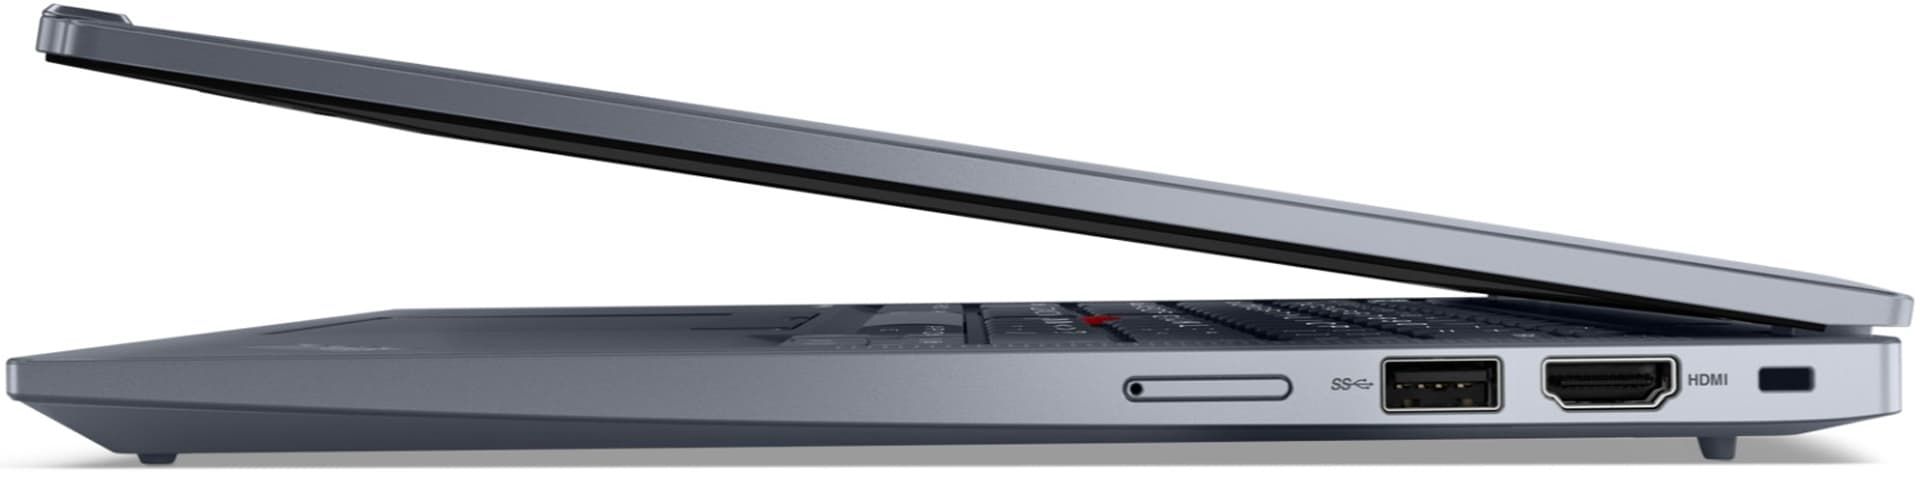 لپ تاپ ThinkPad X13 از نمای کناری